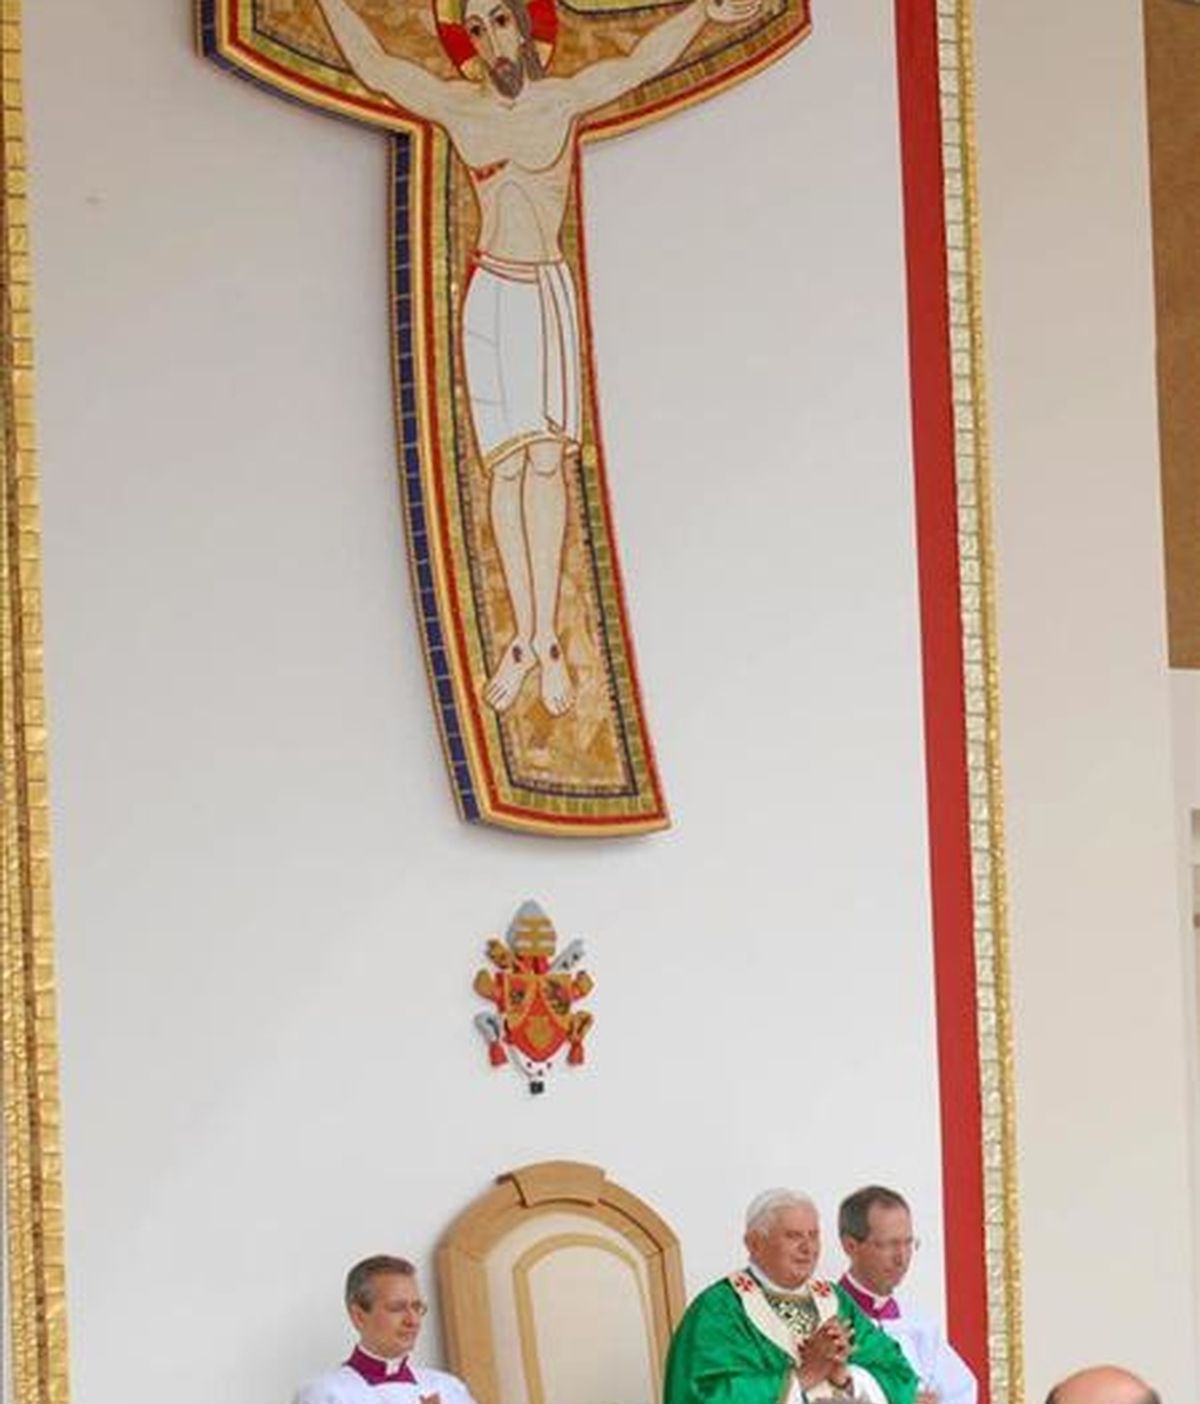 El papa Benedicto XVI oficiando una misa en el santuario de San Giovanni Rotondo, cerca de Foggia, en Puglia (sur de Italia) este domingo 21 de junio. El pontífice se encuentra en este lugar para visitar los restos mortales de San Pío de Pietralcina. EFE